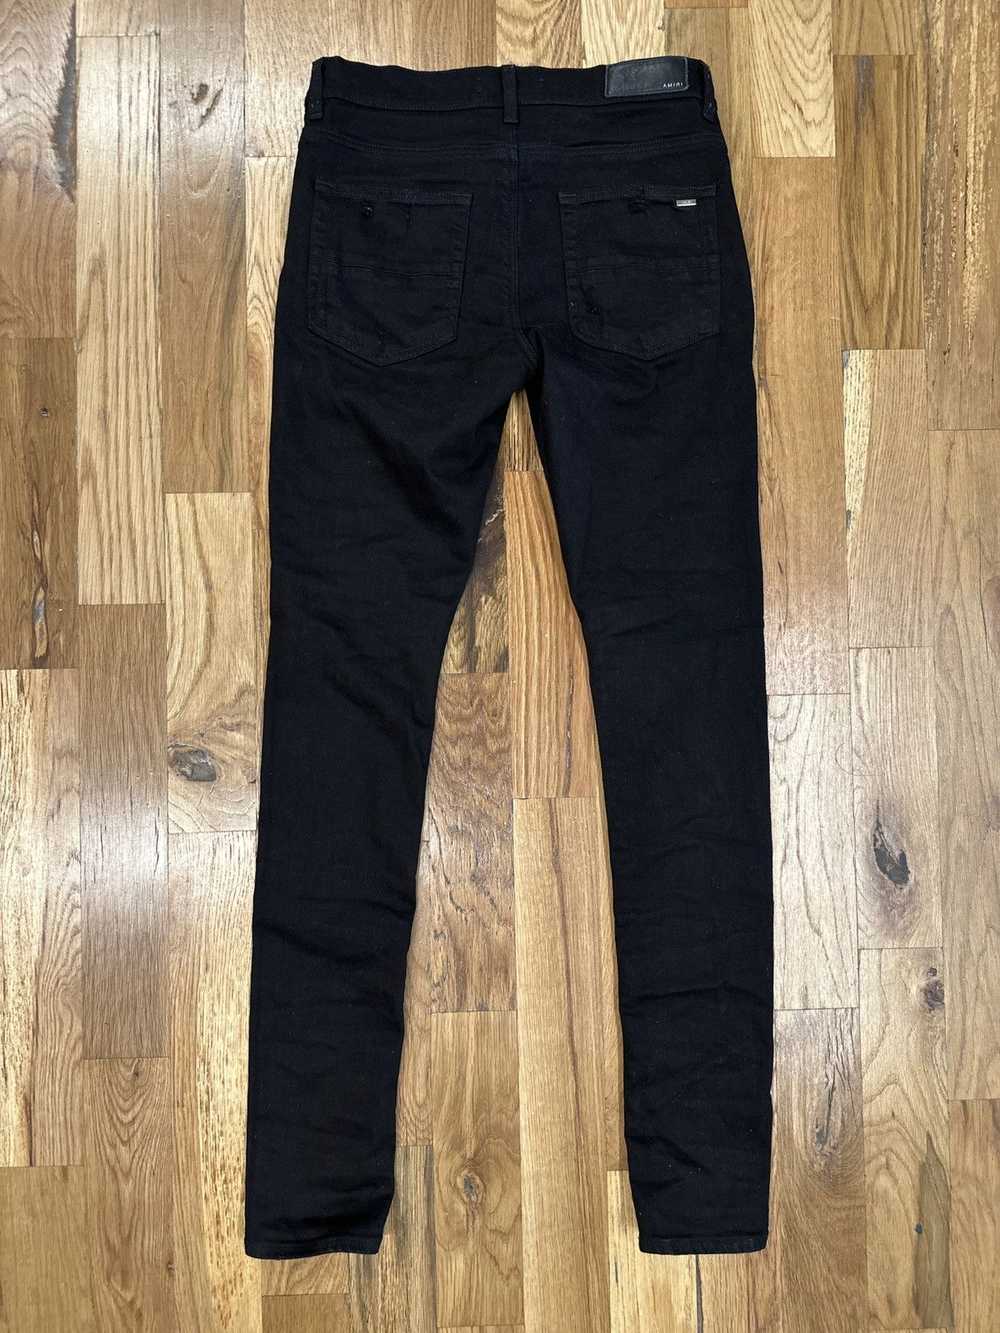 Amiri Amiri Plain Black Denim Jeans Sz 30 - image 2